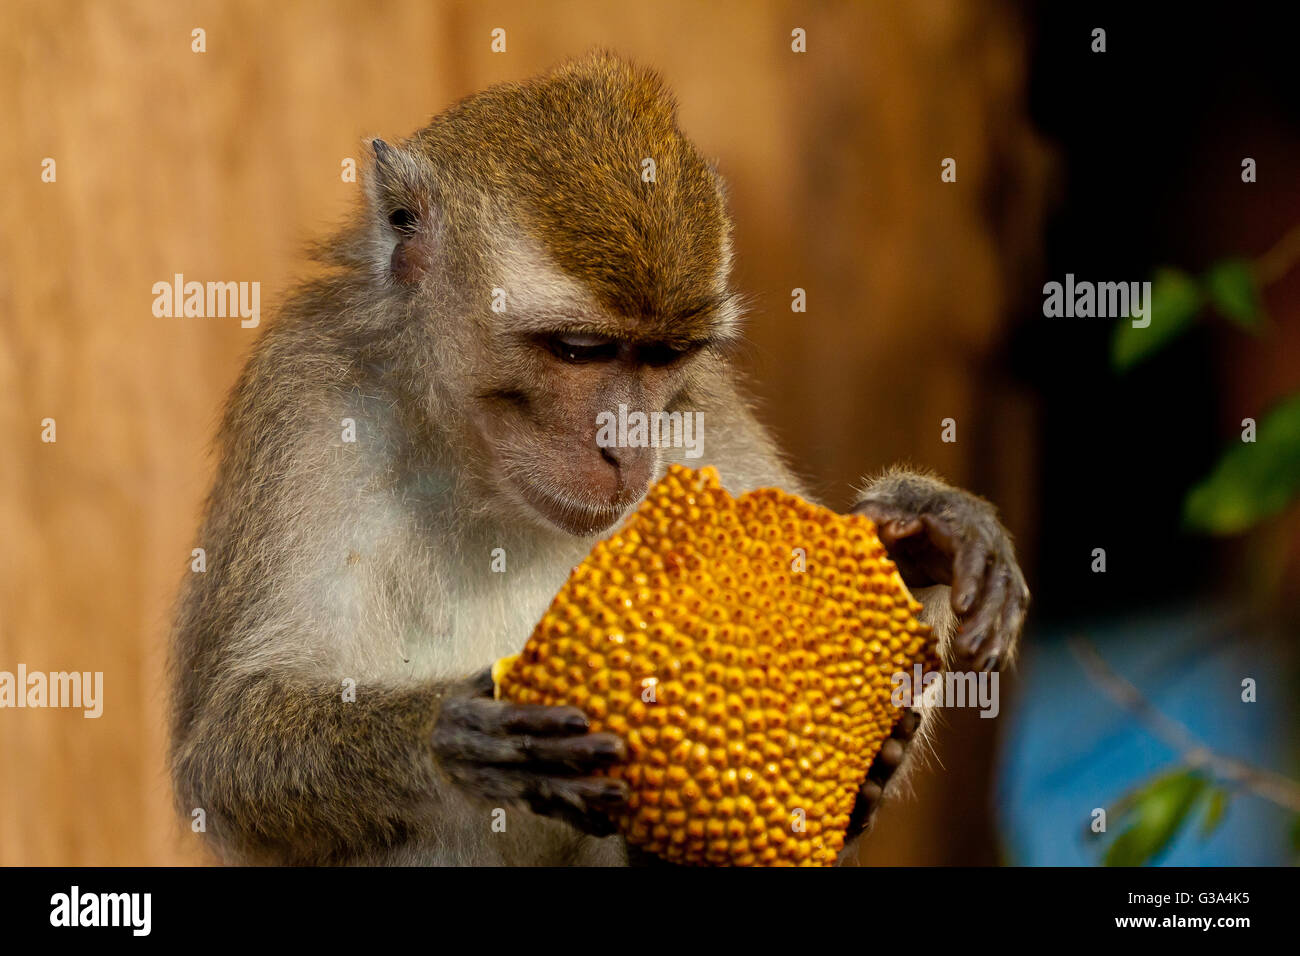 Wildlife monkey eating jack fruit, Brunei Stock Photo